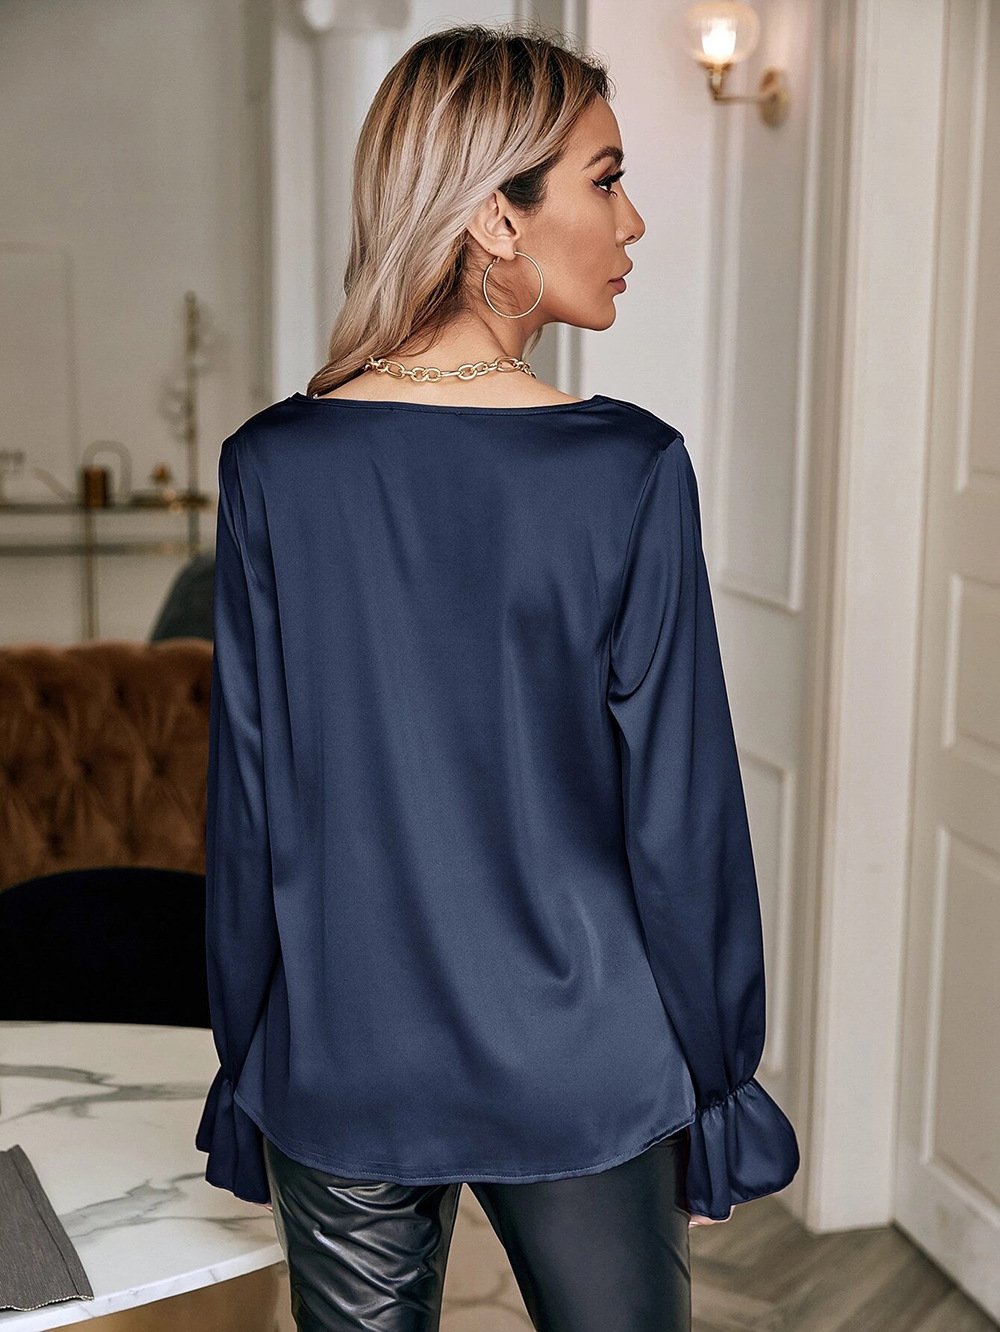 Elegant Satin Pullover Long Sleeves Women Shirts-Shirts & Tops-Free Shipping at meselling99